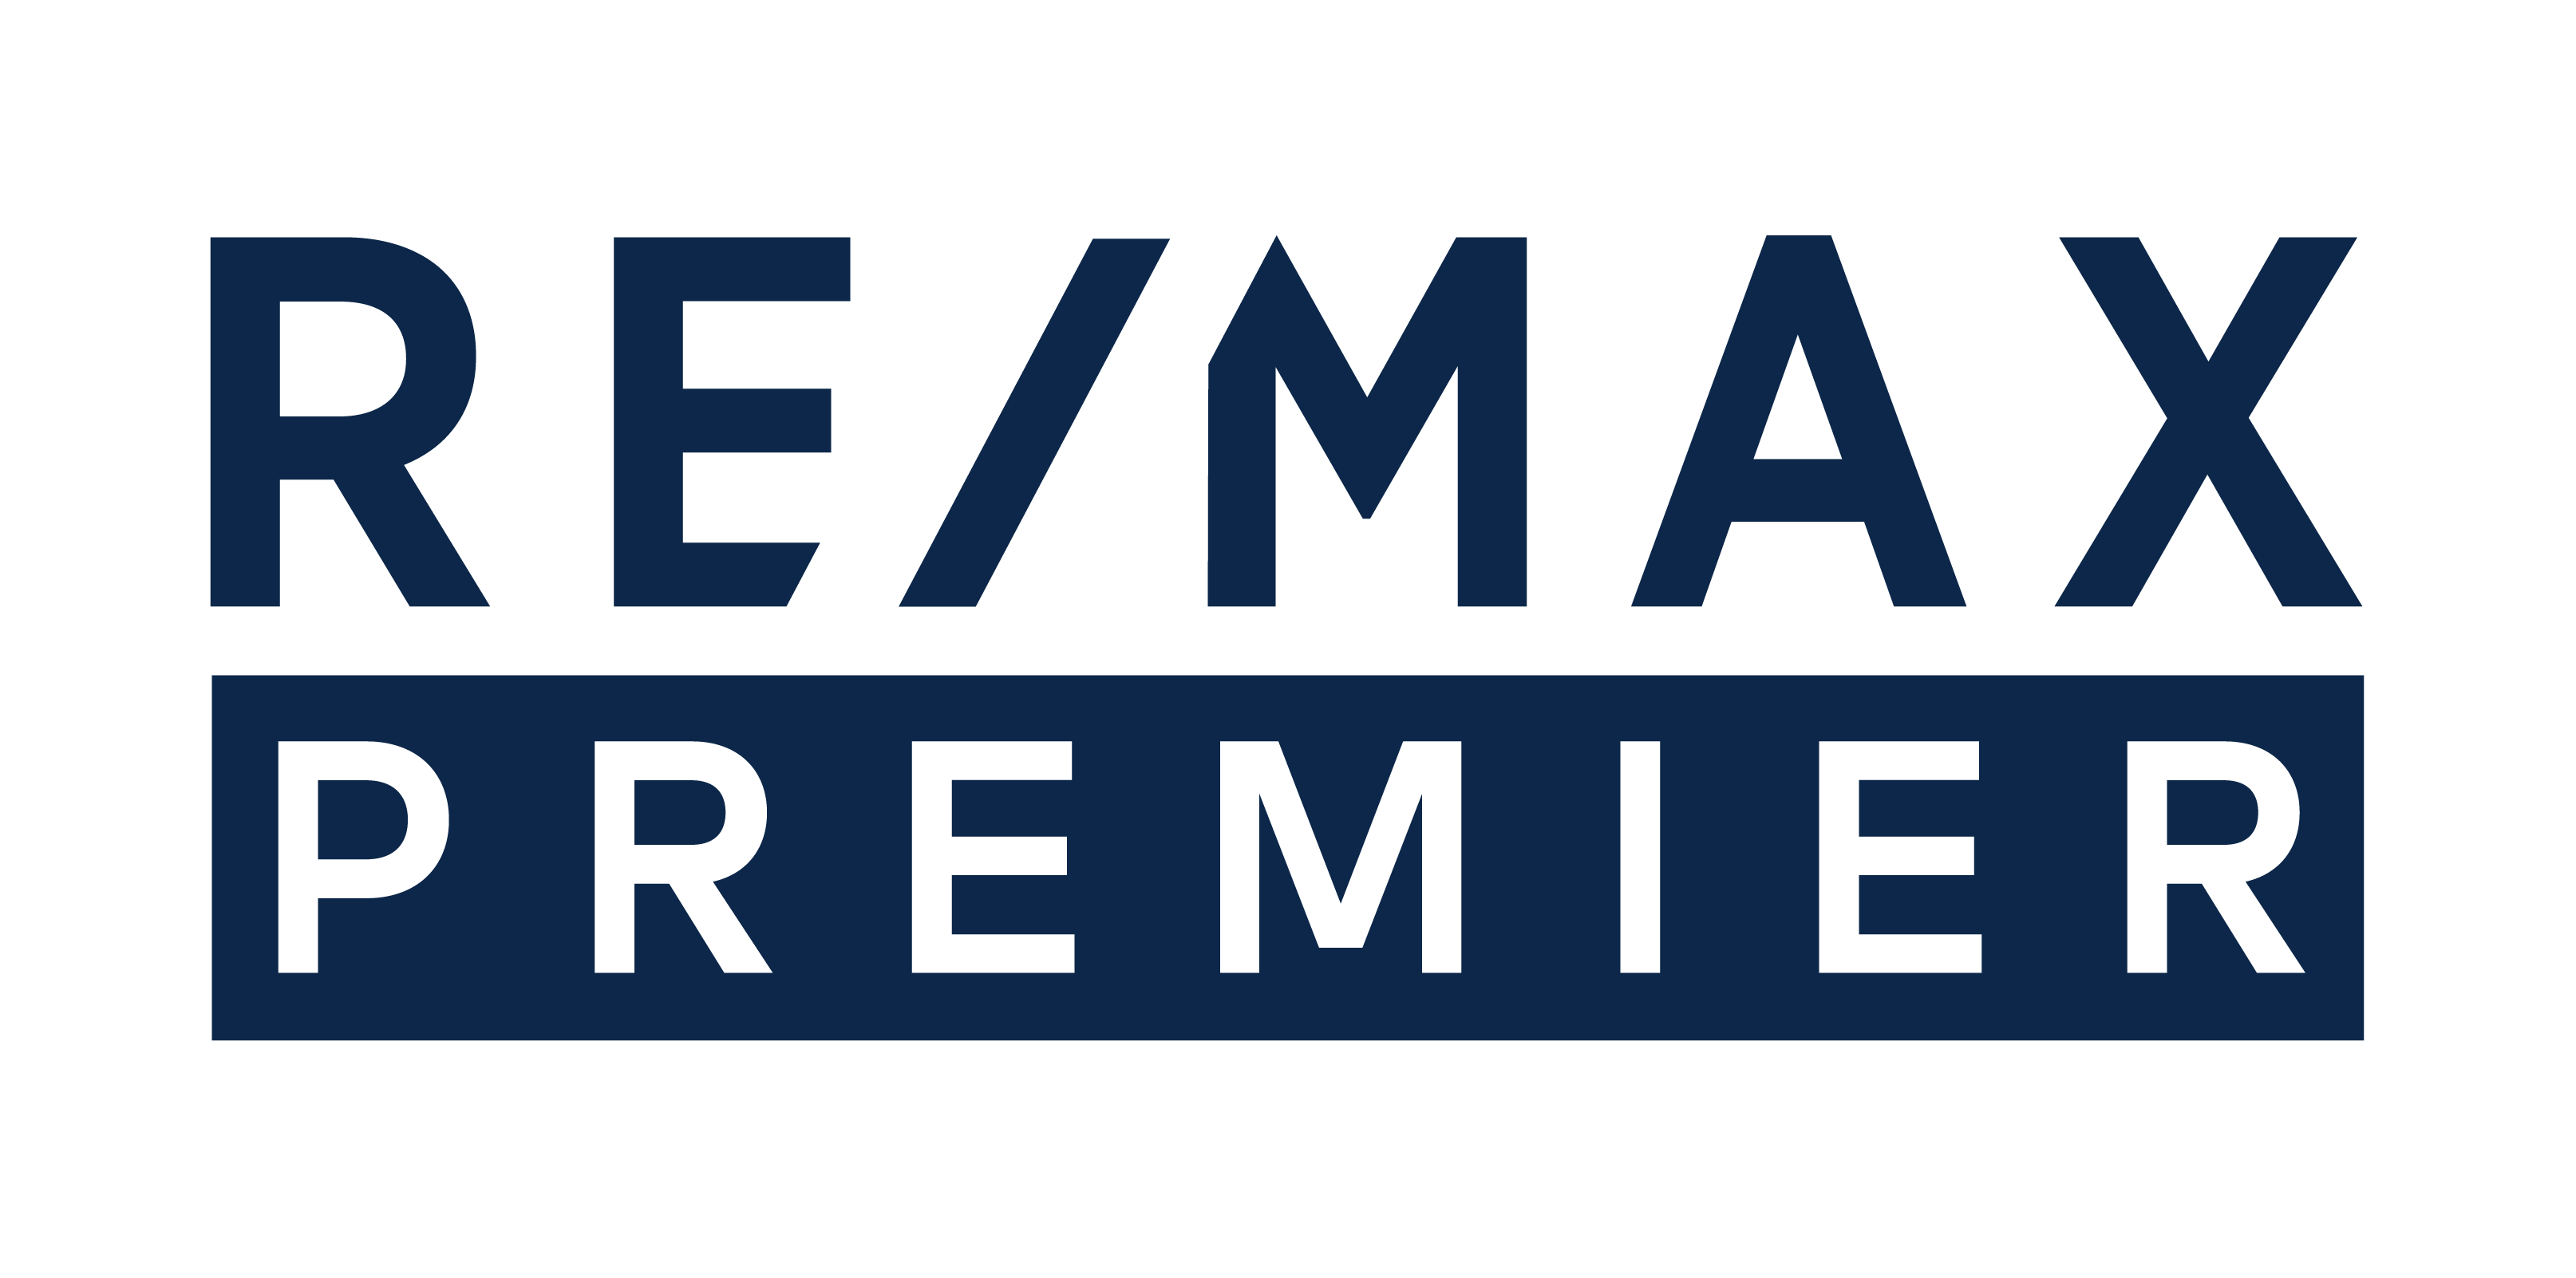 Remax Premier